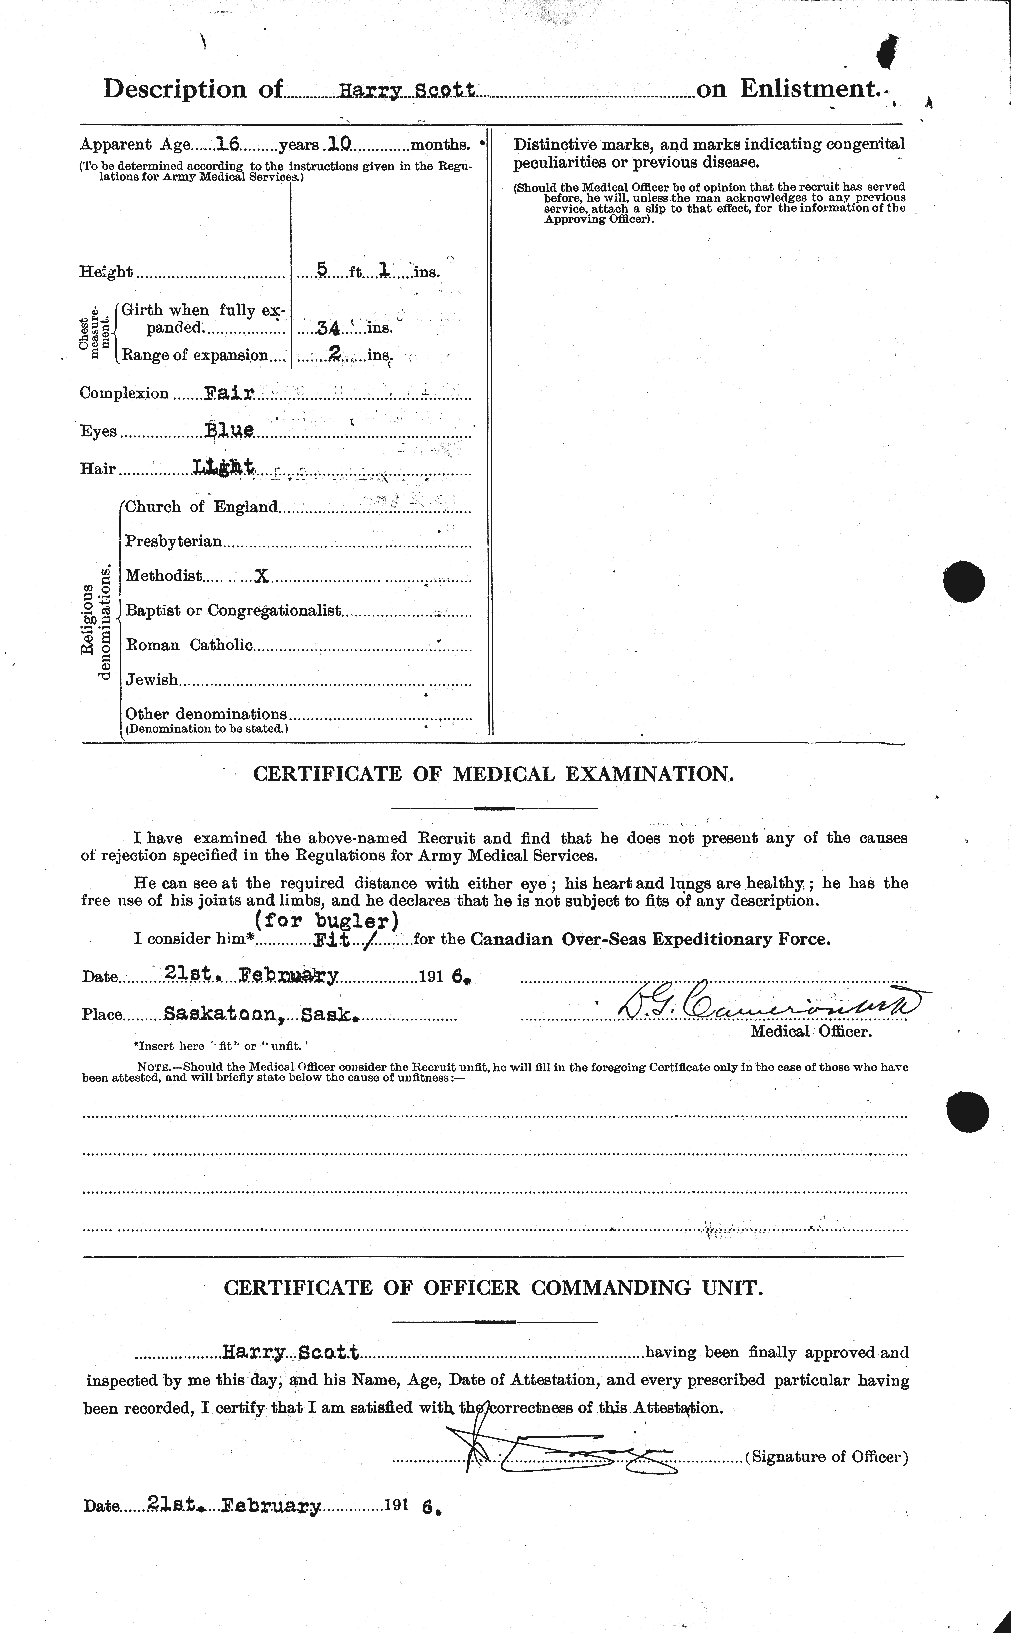 Dossiers du Personnel de la Première Guerre mondiale - CEC 086329a